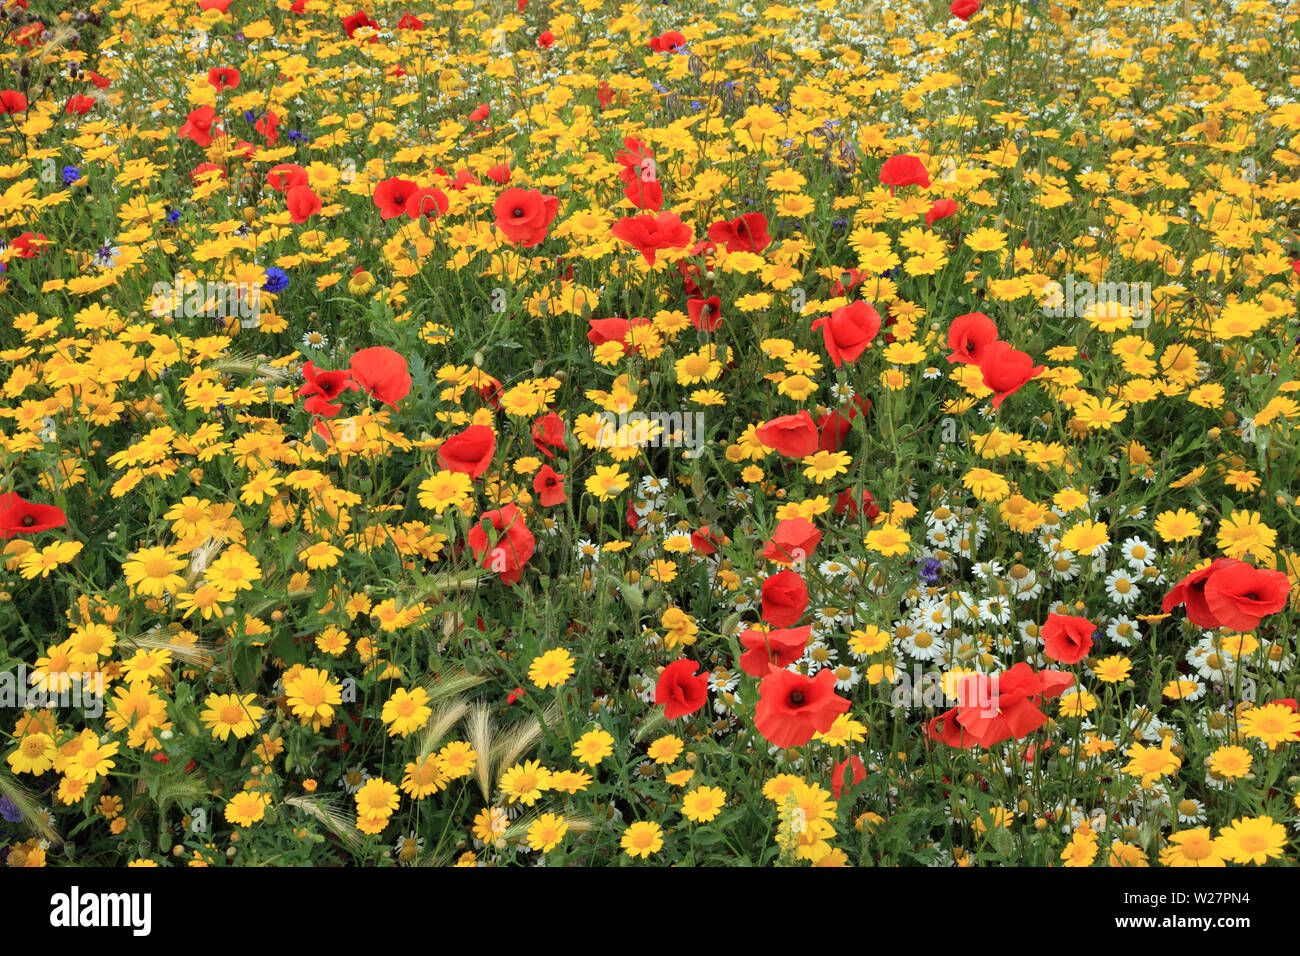 Jardin de fleurs sauvages, champ coquelicot, coquelicot, bleuet, marigold maïs, coloré Banque D'Images